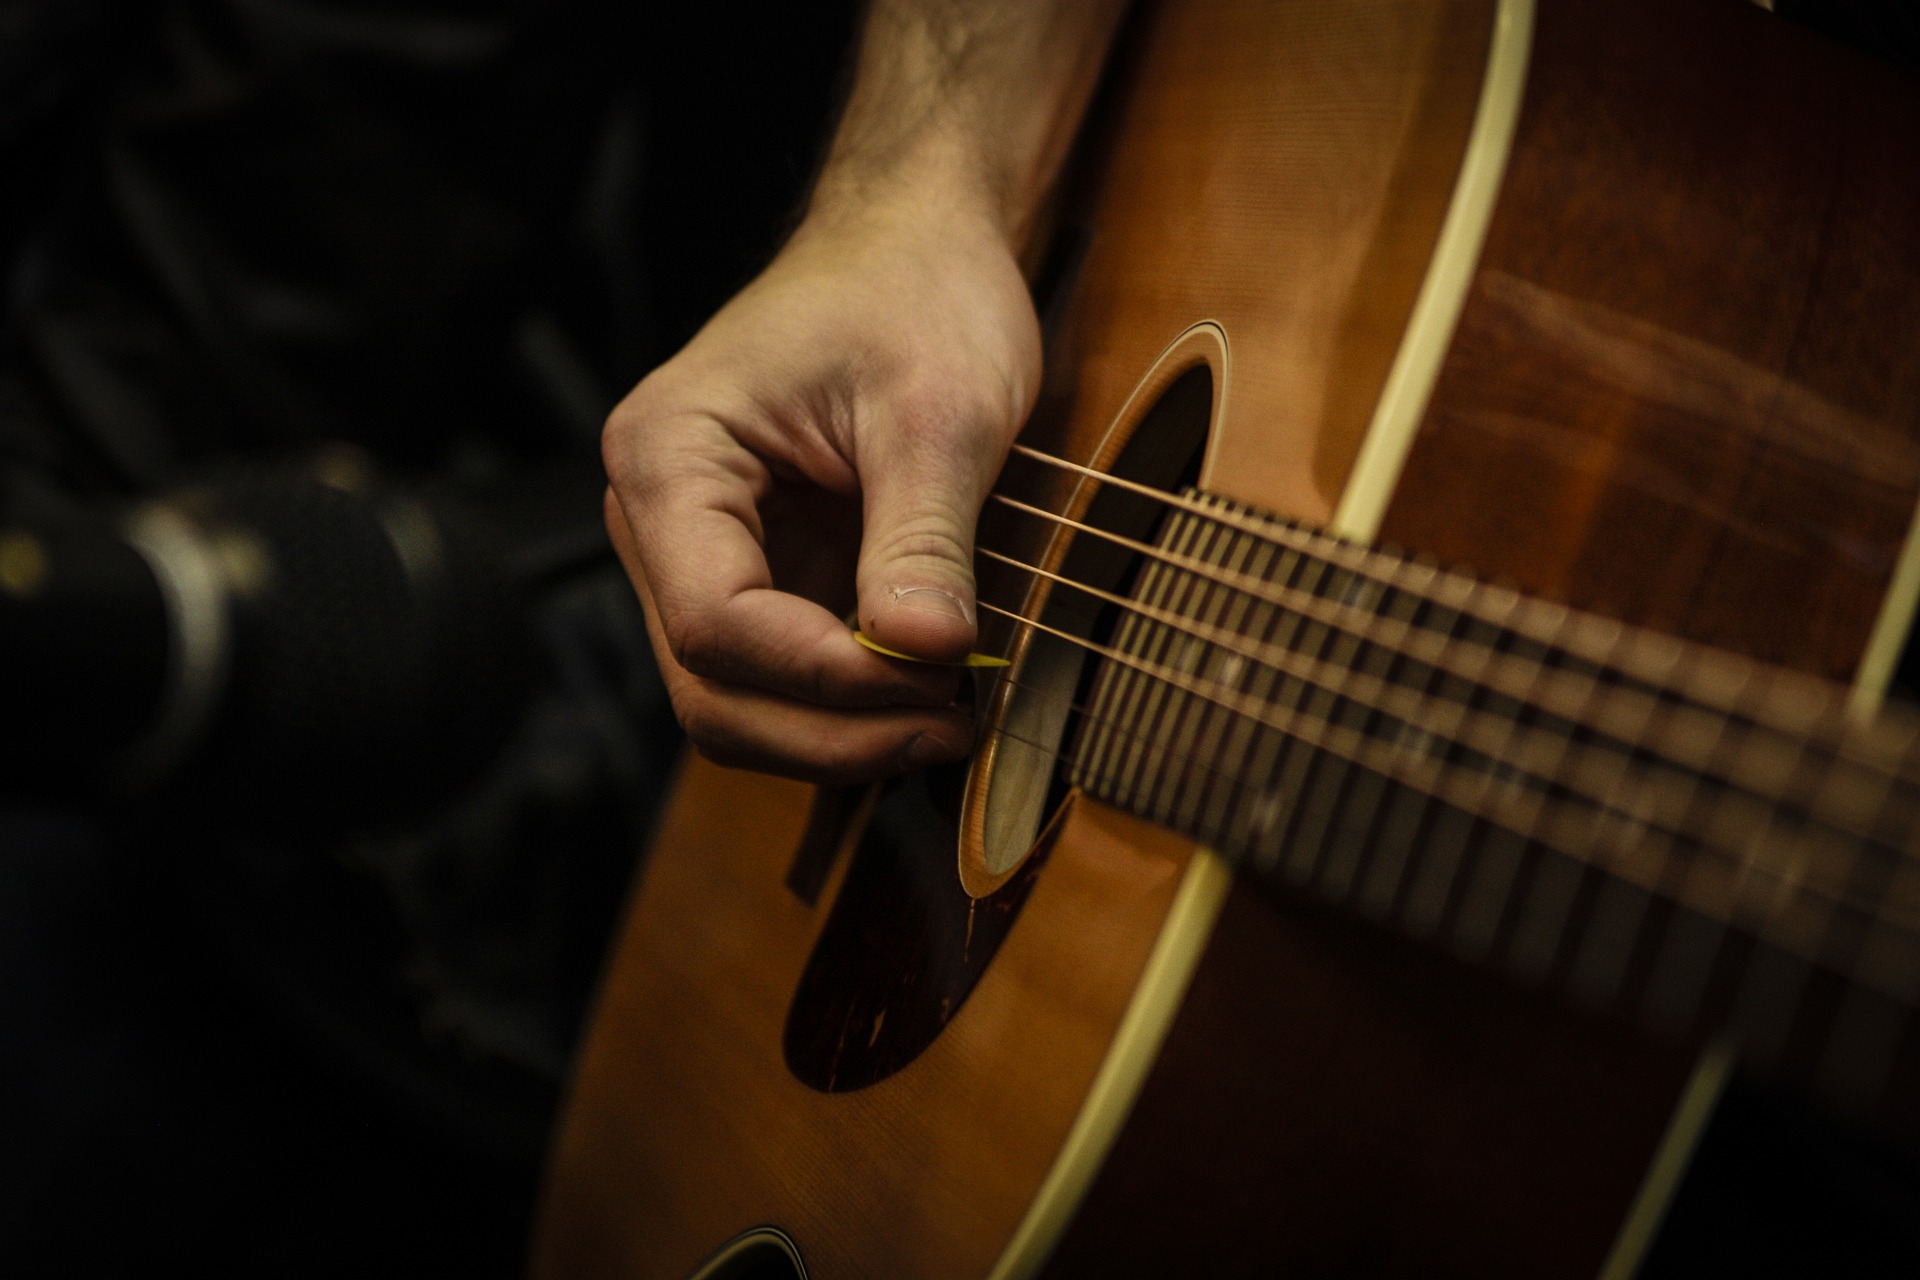 Quels Sont les Accessoires Pour Guitare Indispensables ? - My Music Teacher